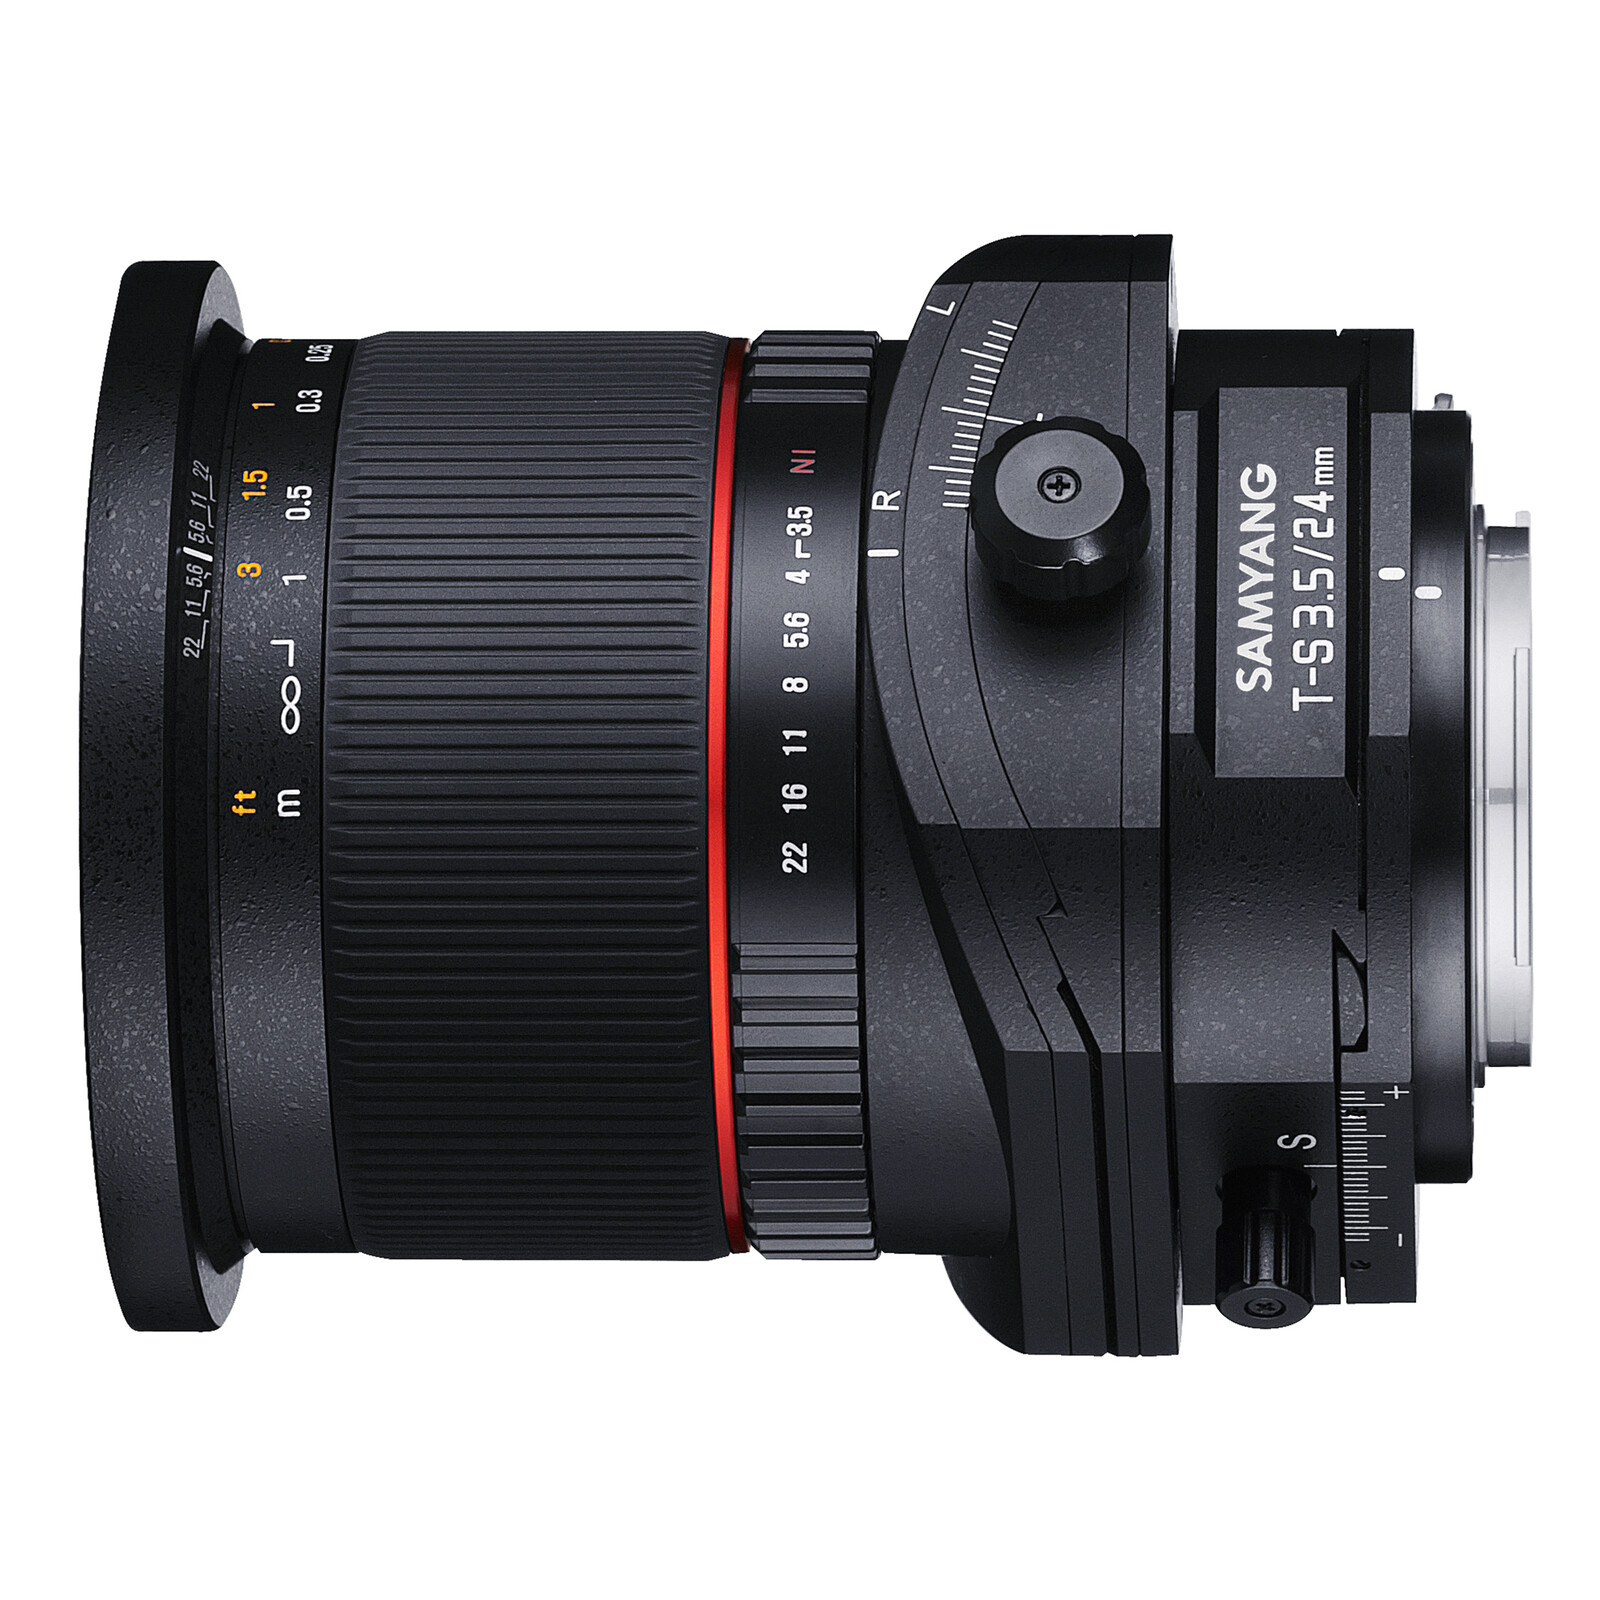 Samyang MF 24/3,5 T/S Nikon F + UV Filter